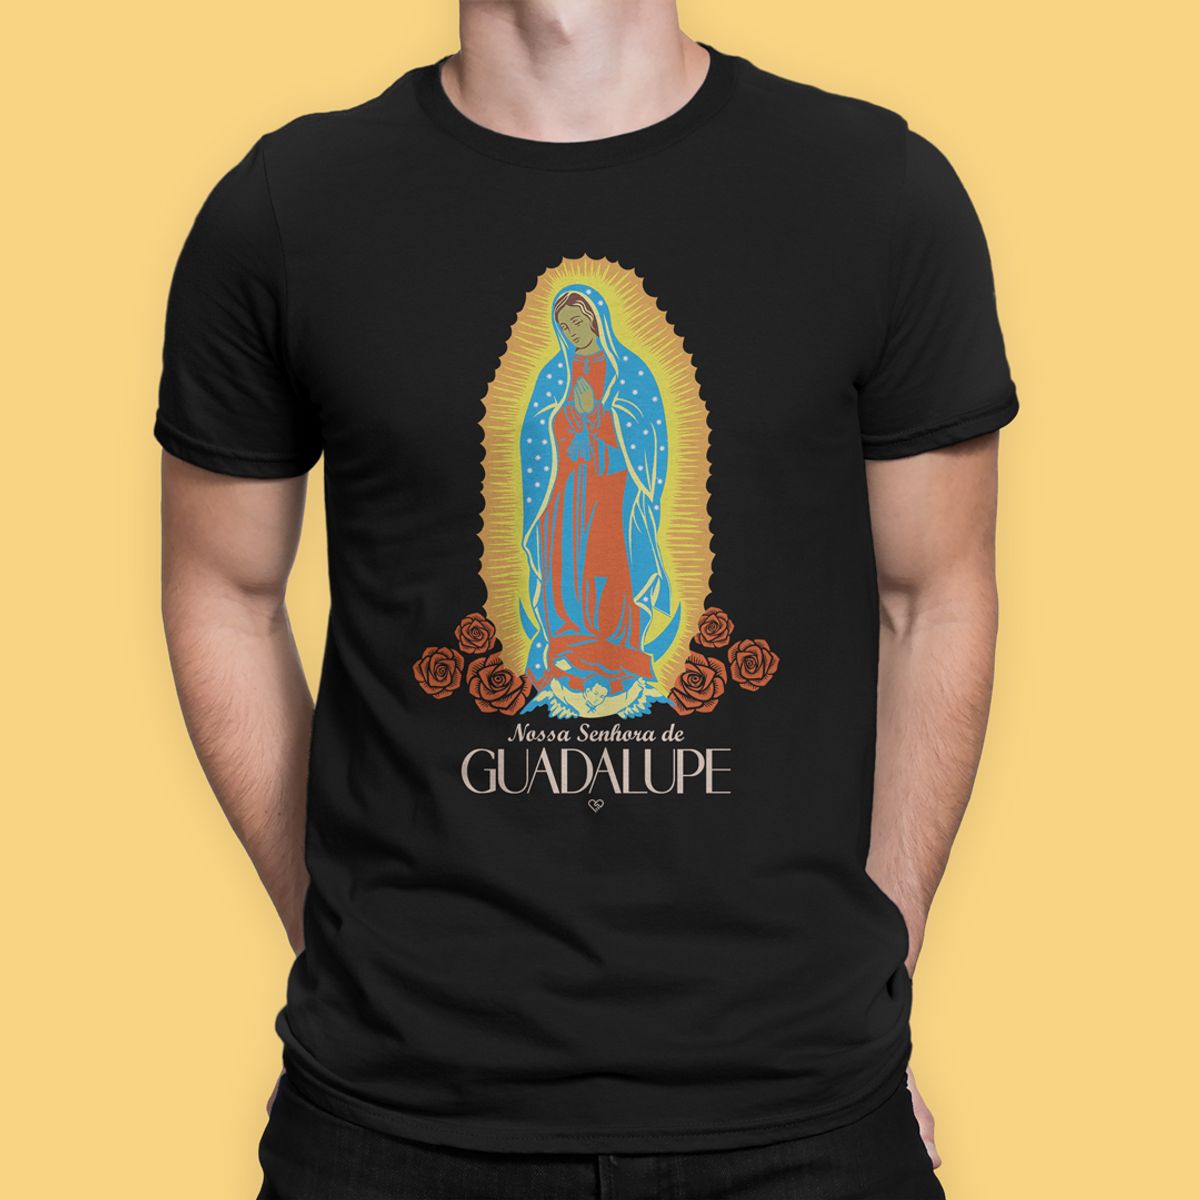 Nome do produto: Camiseta Nossa Senhora de Guadalupe